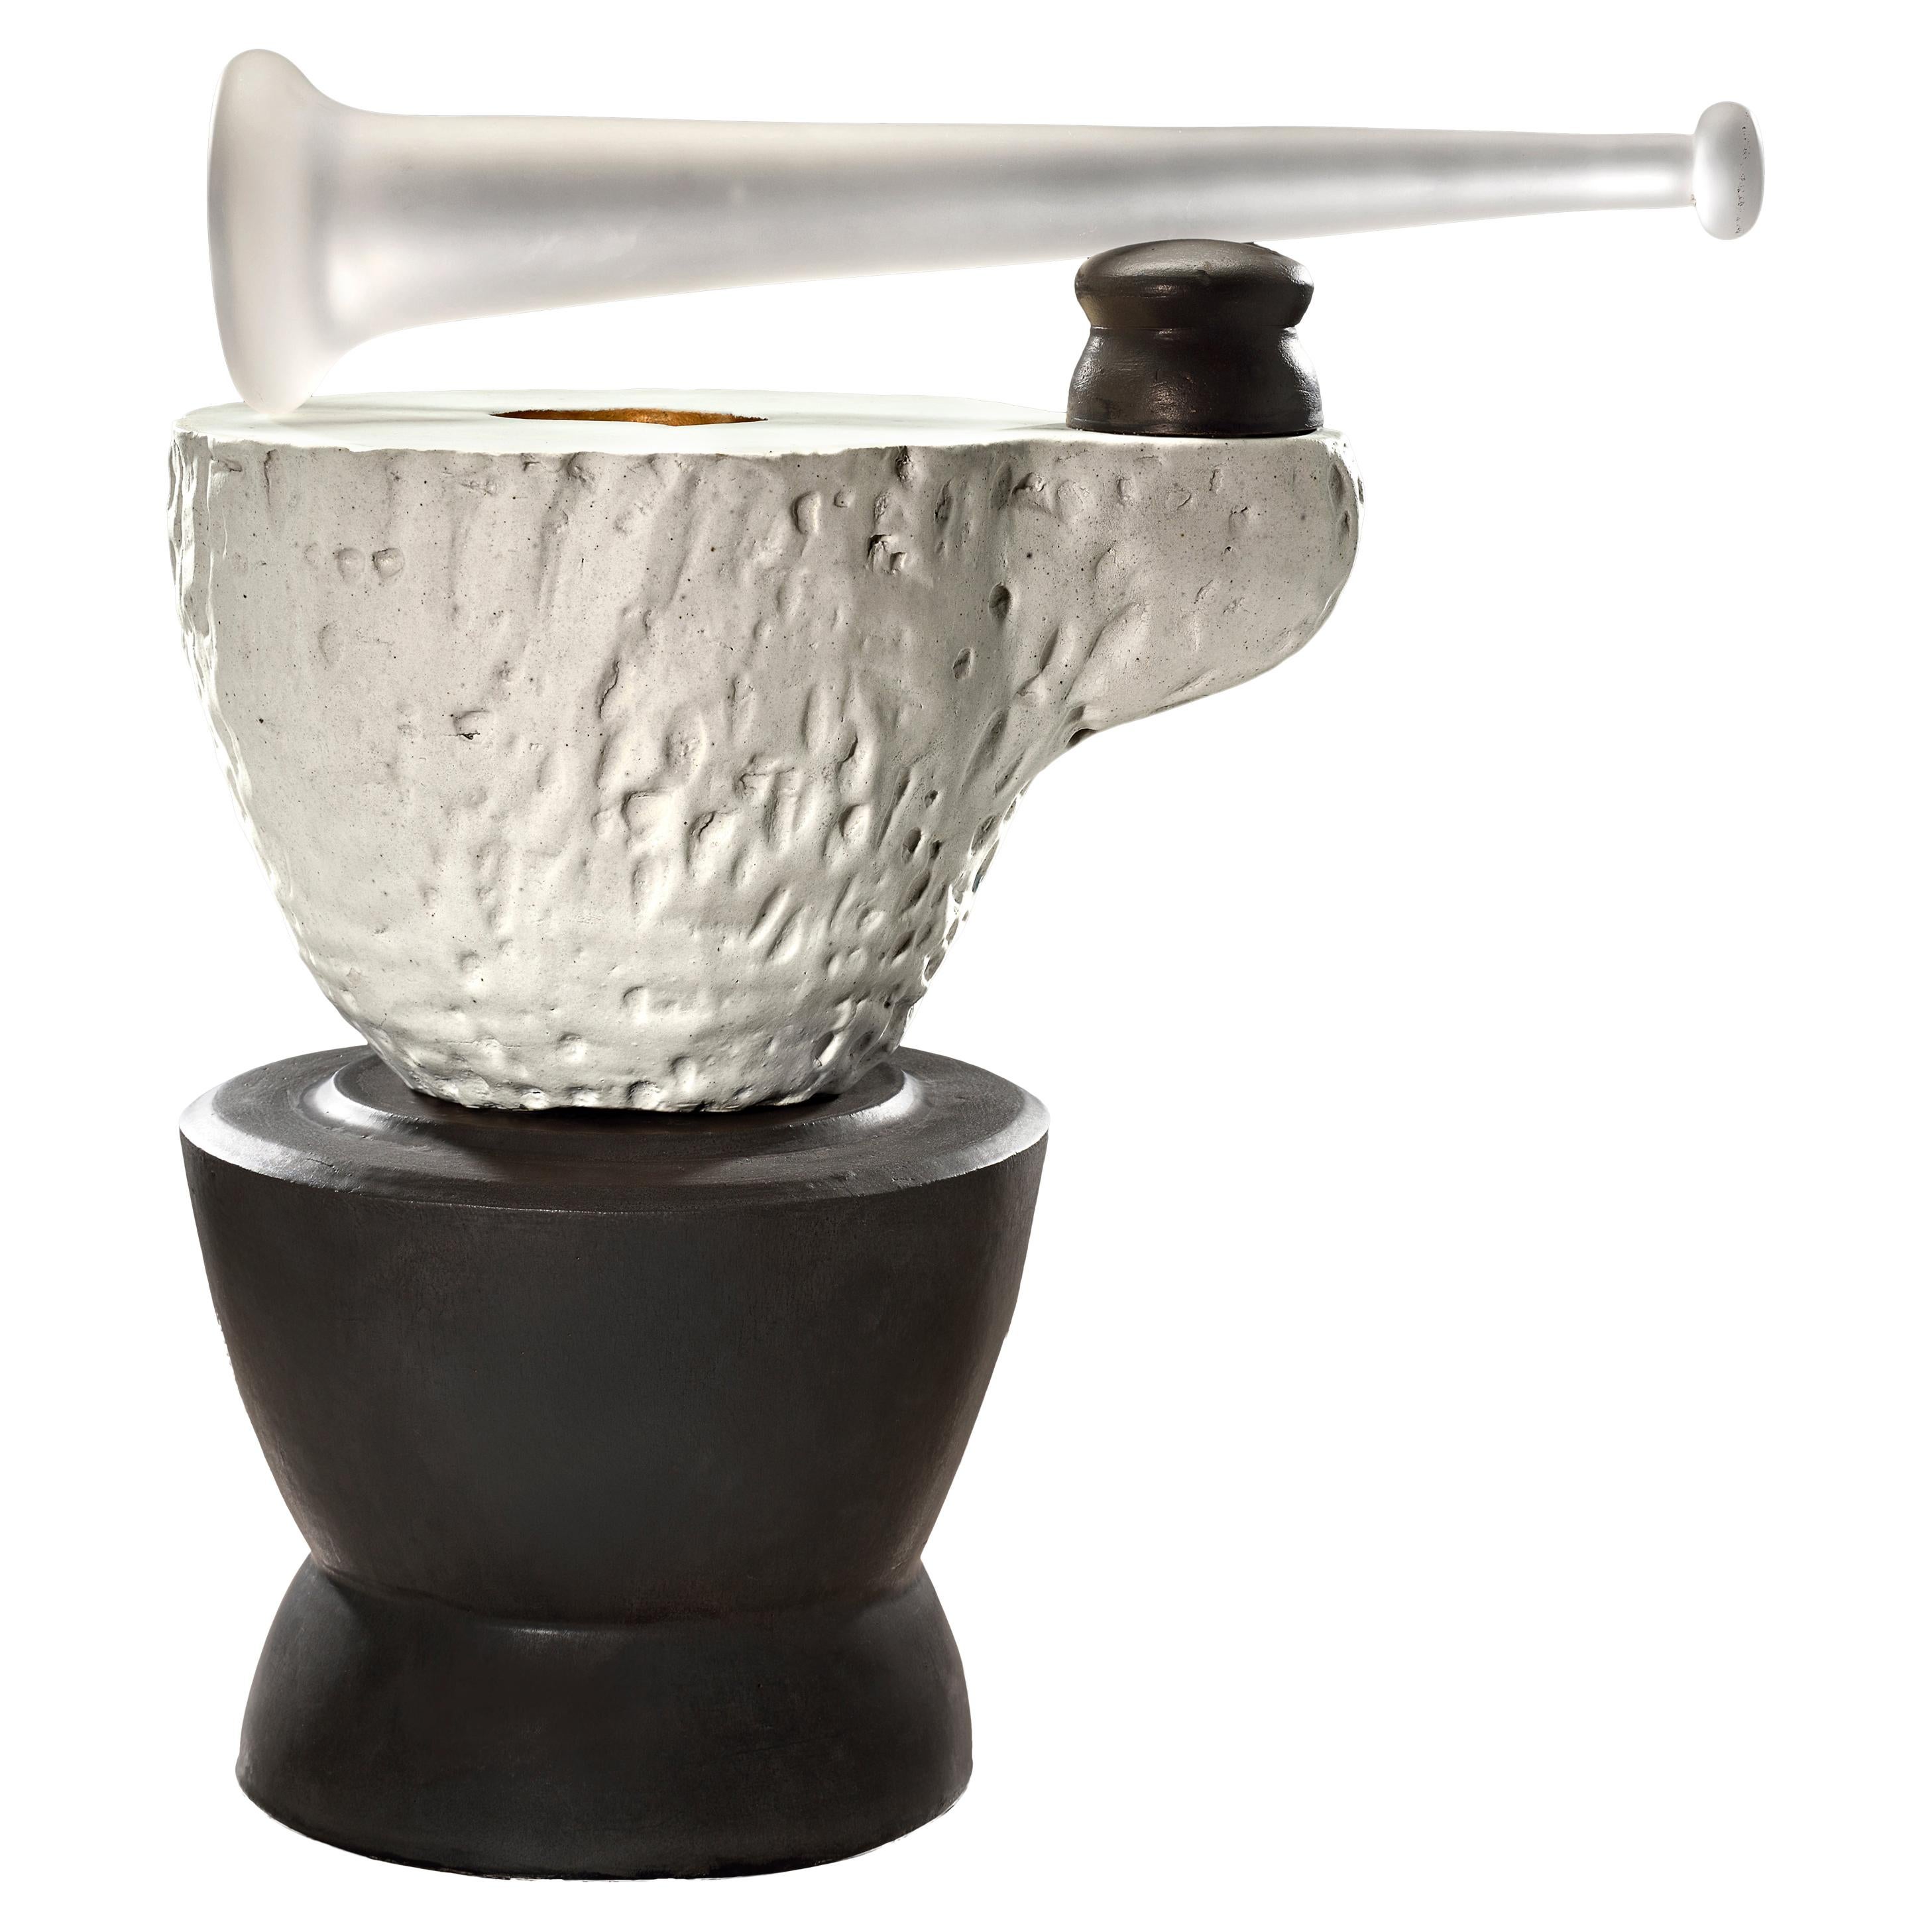 Richard Hirsch: Skulptur „Mortar und Glaspfeil“ aus Keramik, Nr. 2, 2020